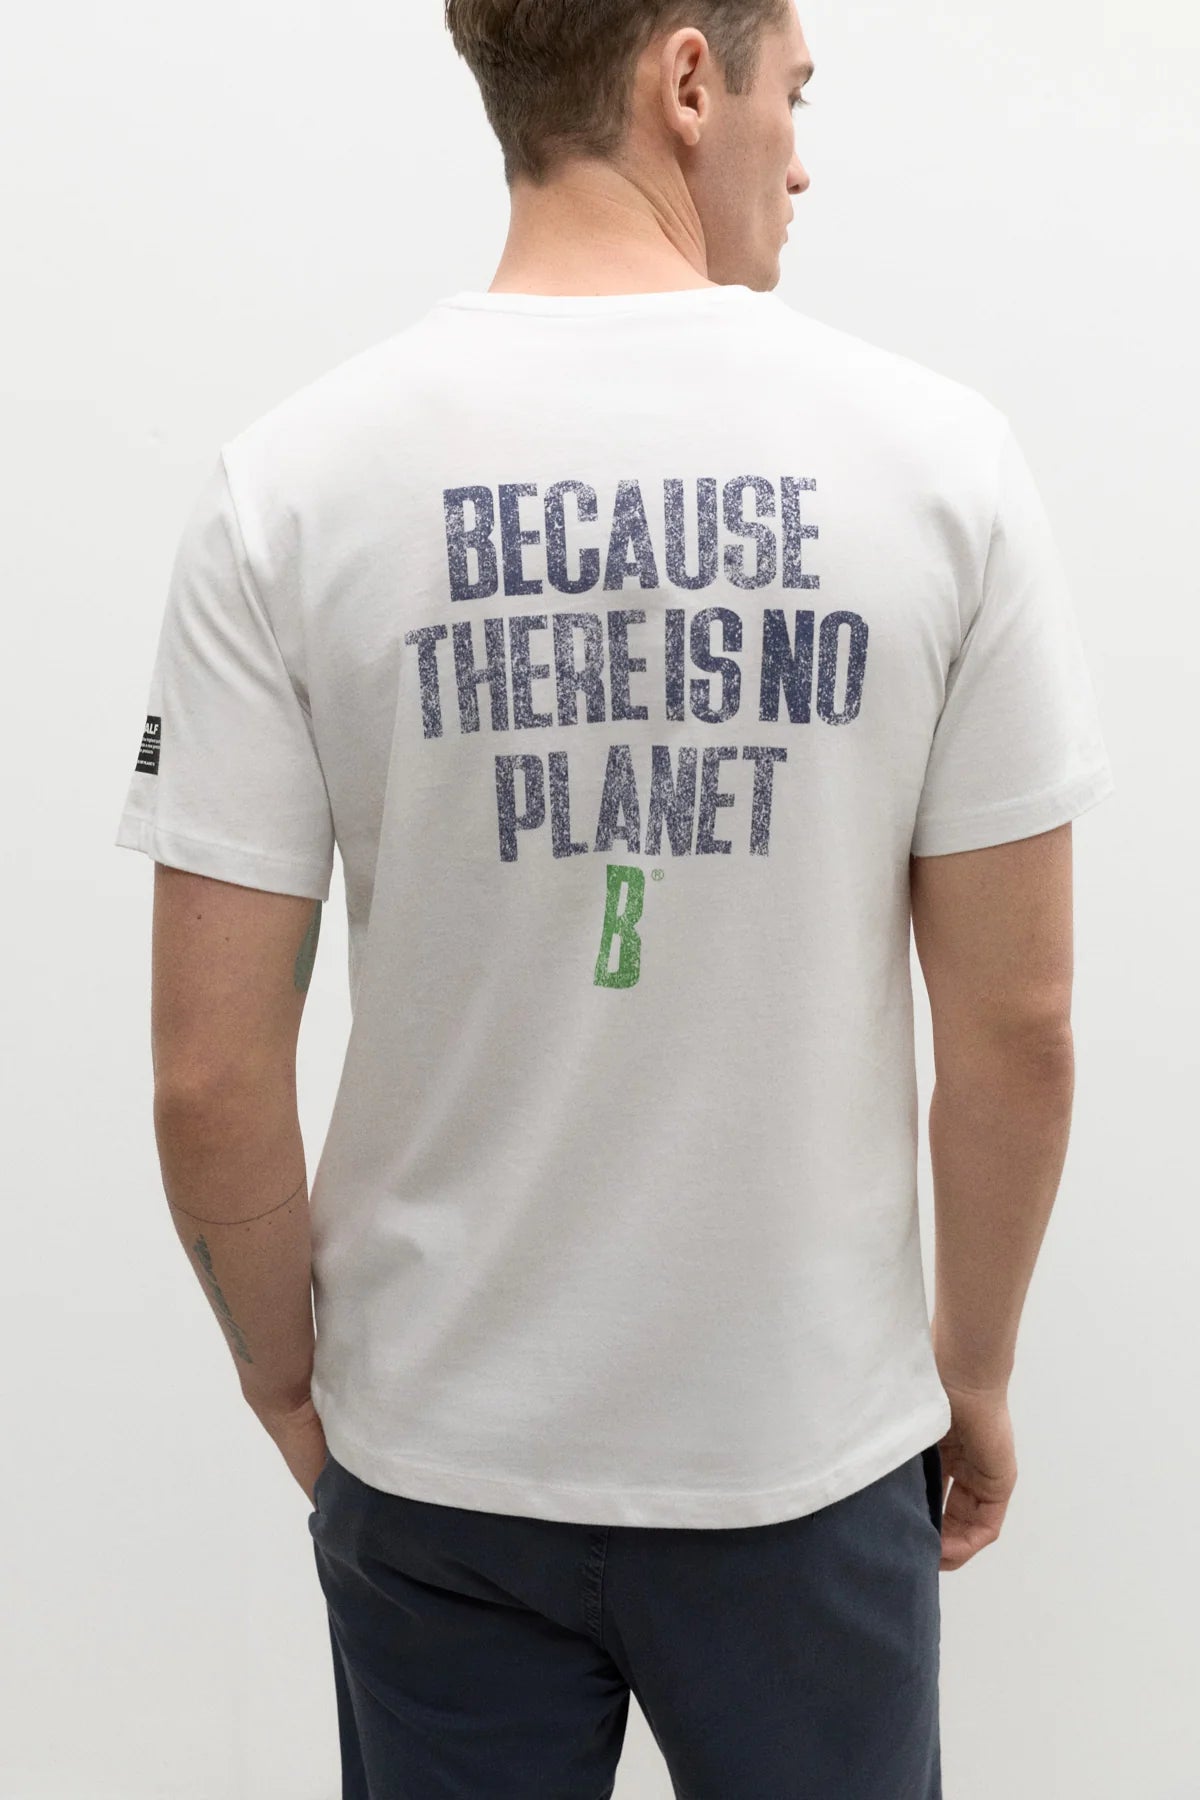 T-Shirt con Logo Ecoalf / Bianco - Ideal Moda